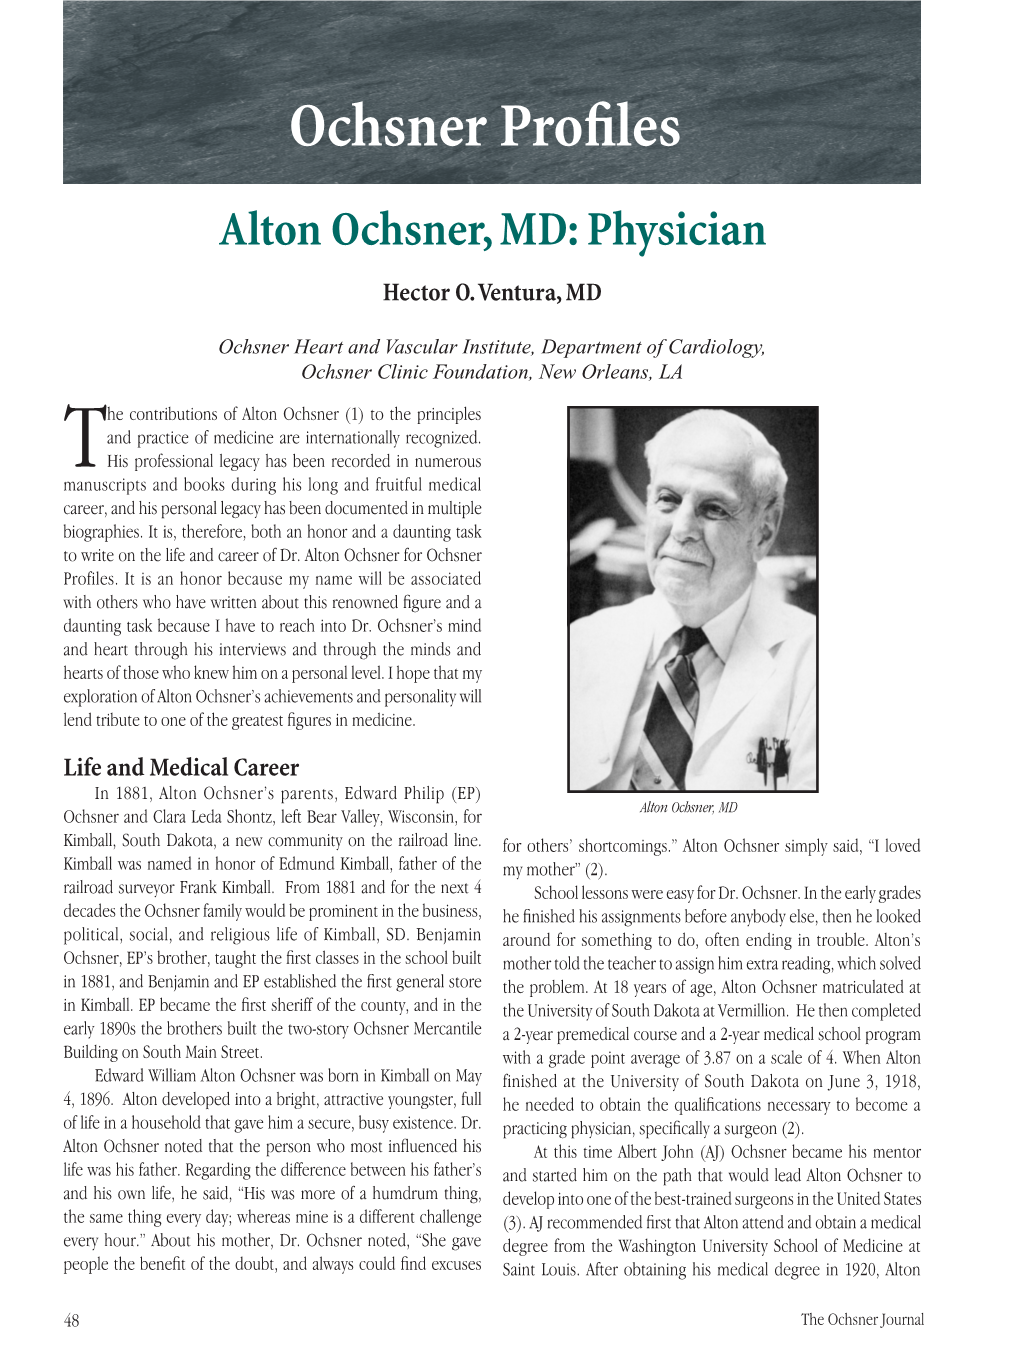 Alton Ochsner, MD: Physician